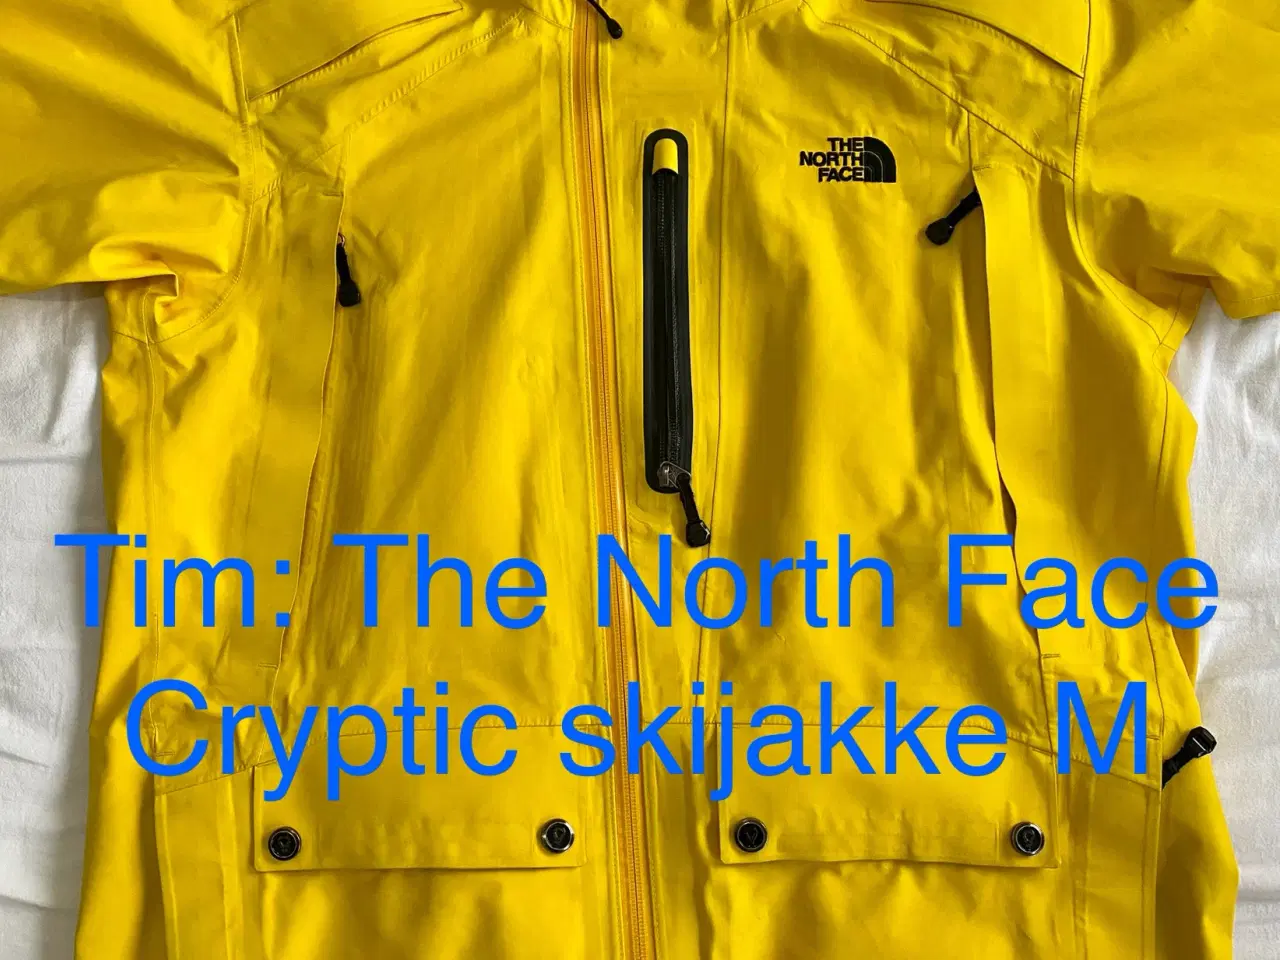 Billede 15 - The North Face Cryptic skijakke M 